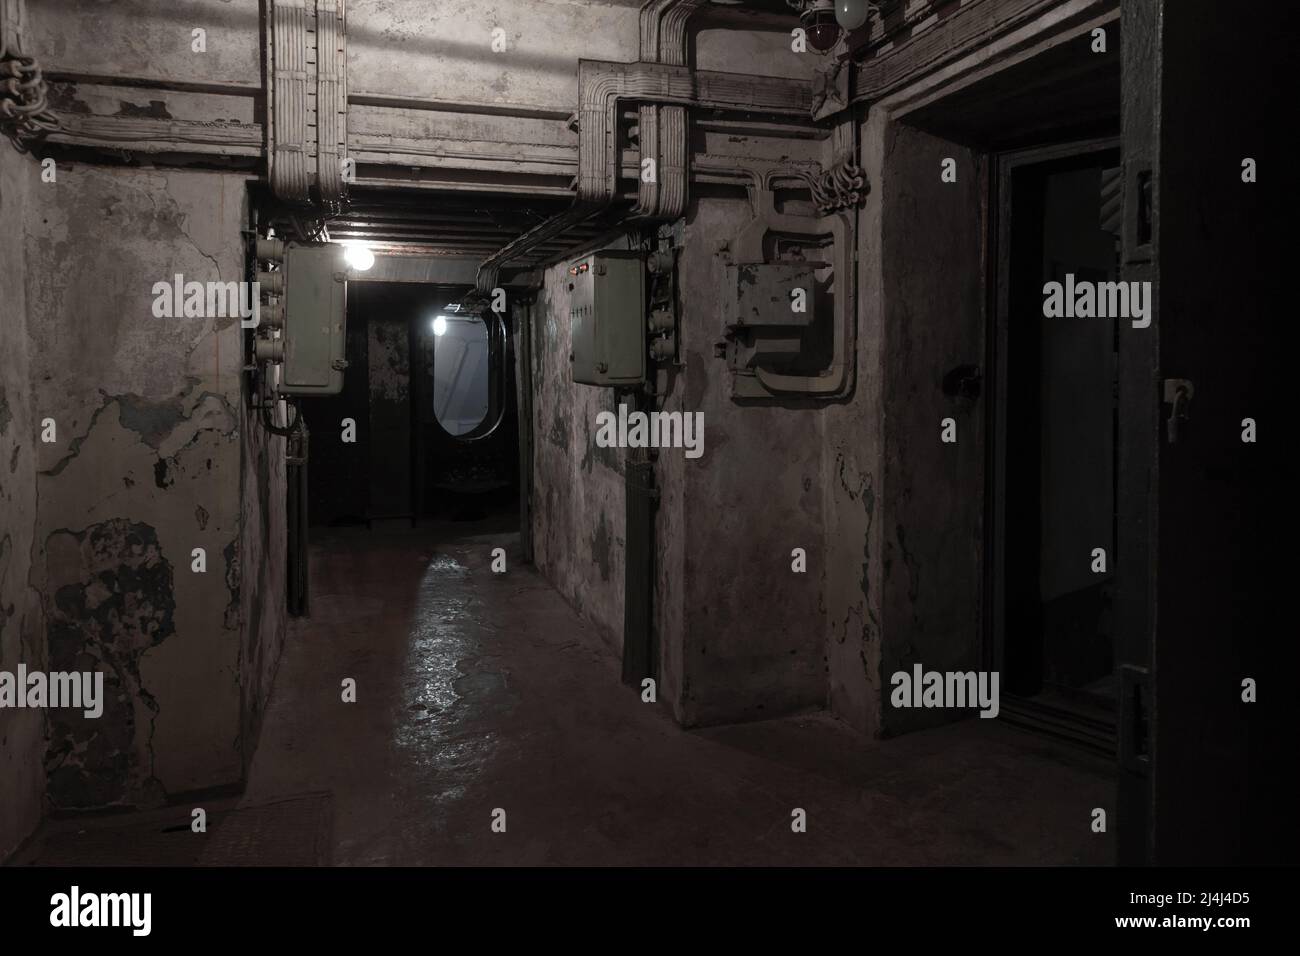 Intérieur de bunker militaire sombre abstrait, chambres souterraines grungy Banque D'Images